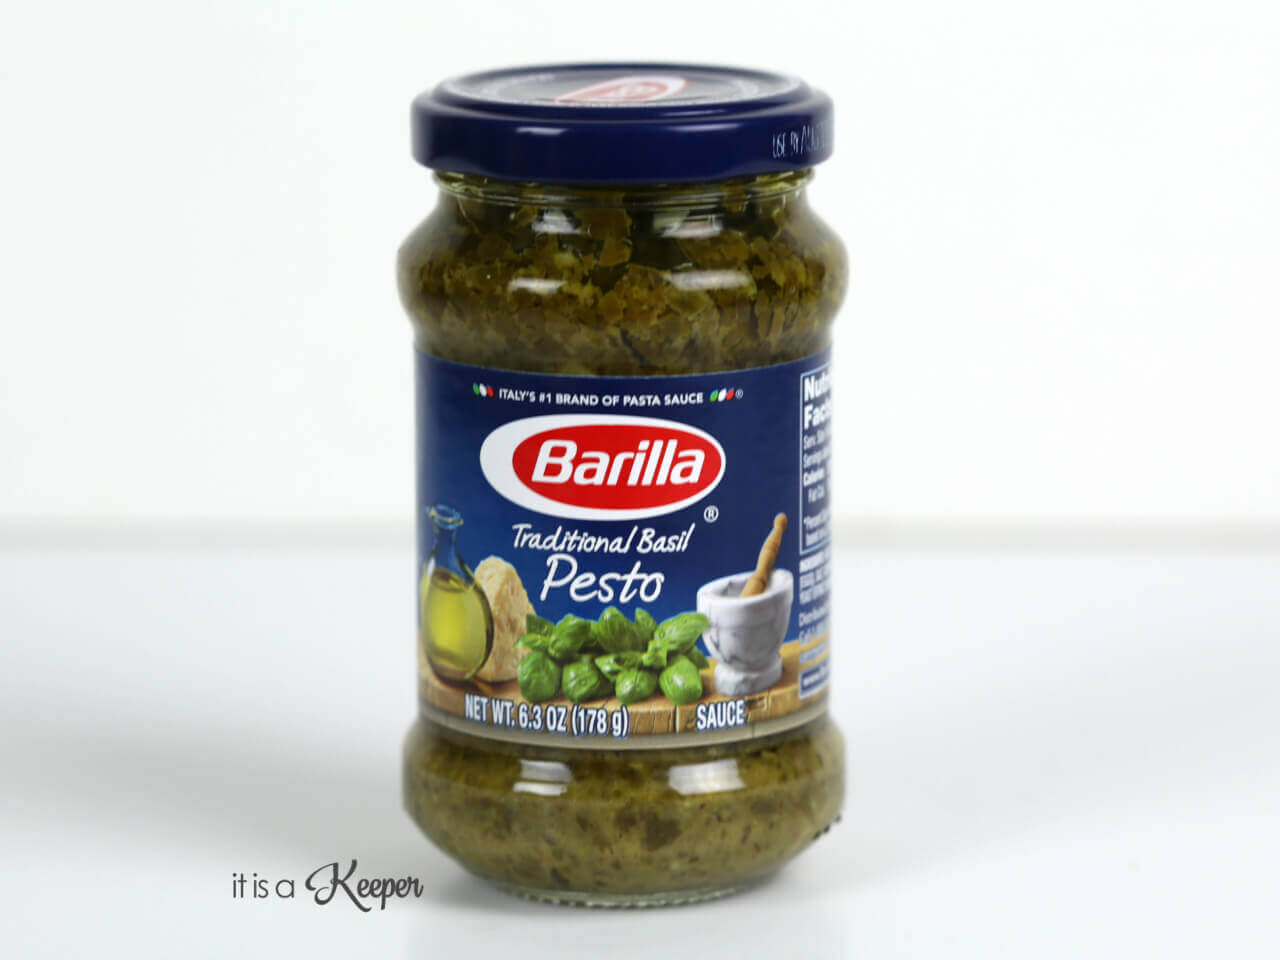 Barilla pesto sauce with a white ba kground.